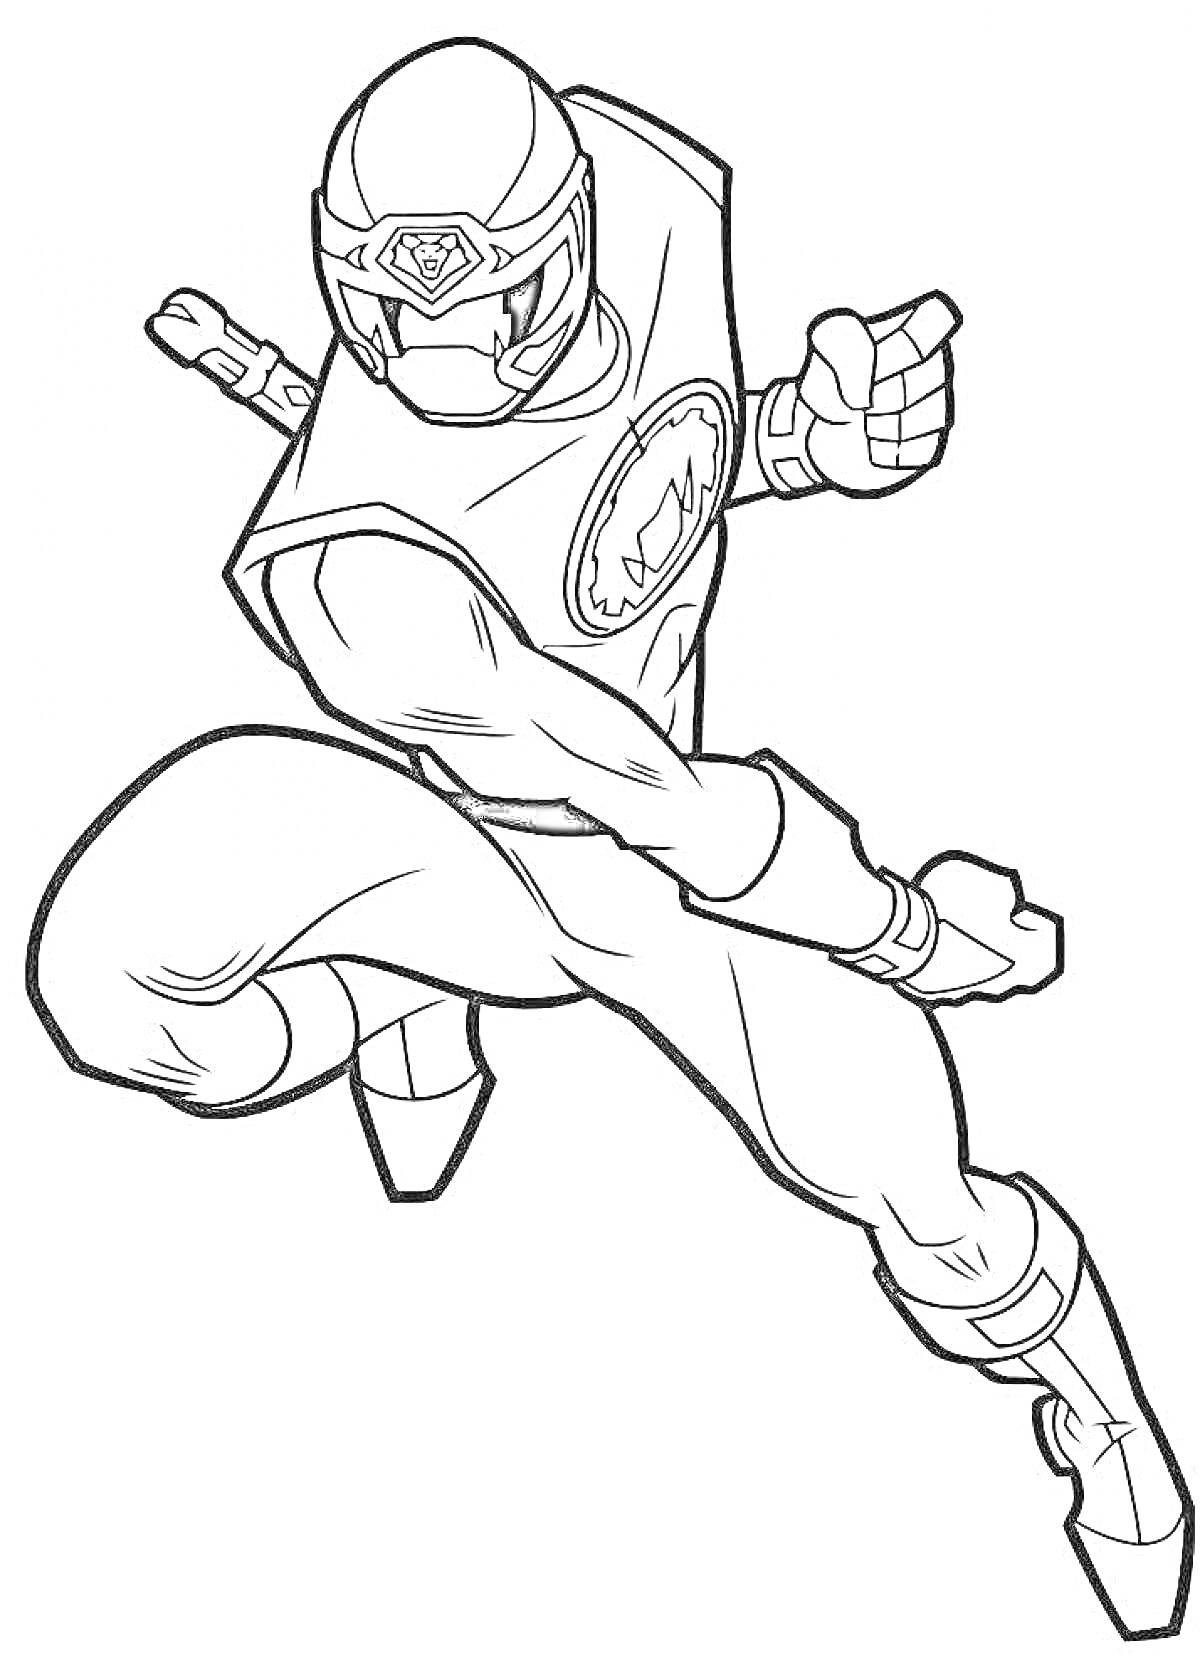 Раскраска Супергерой рейнджер в прыжке с поднятым кулаком